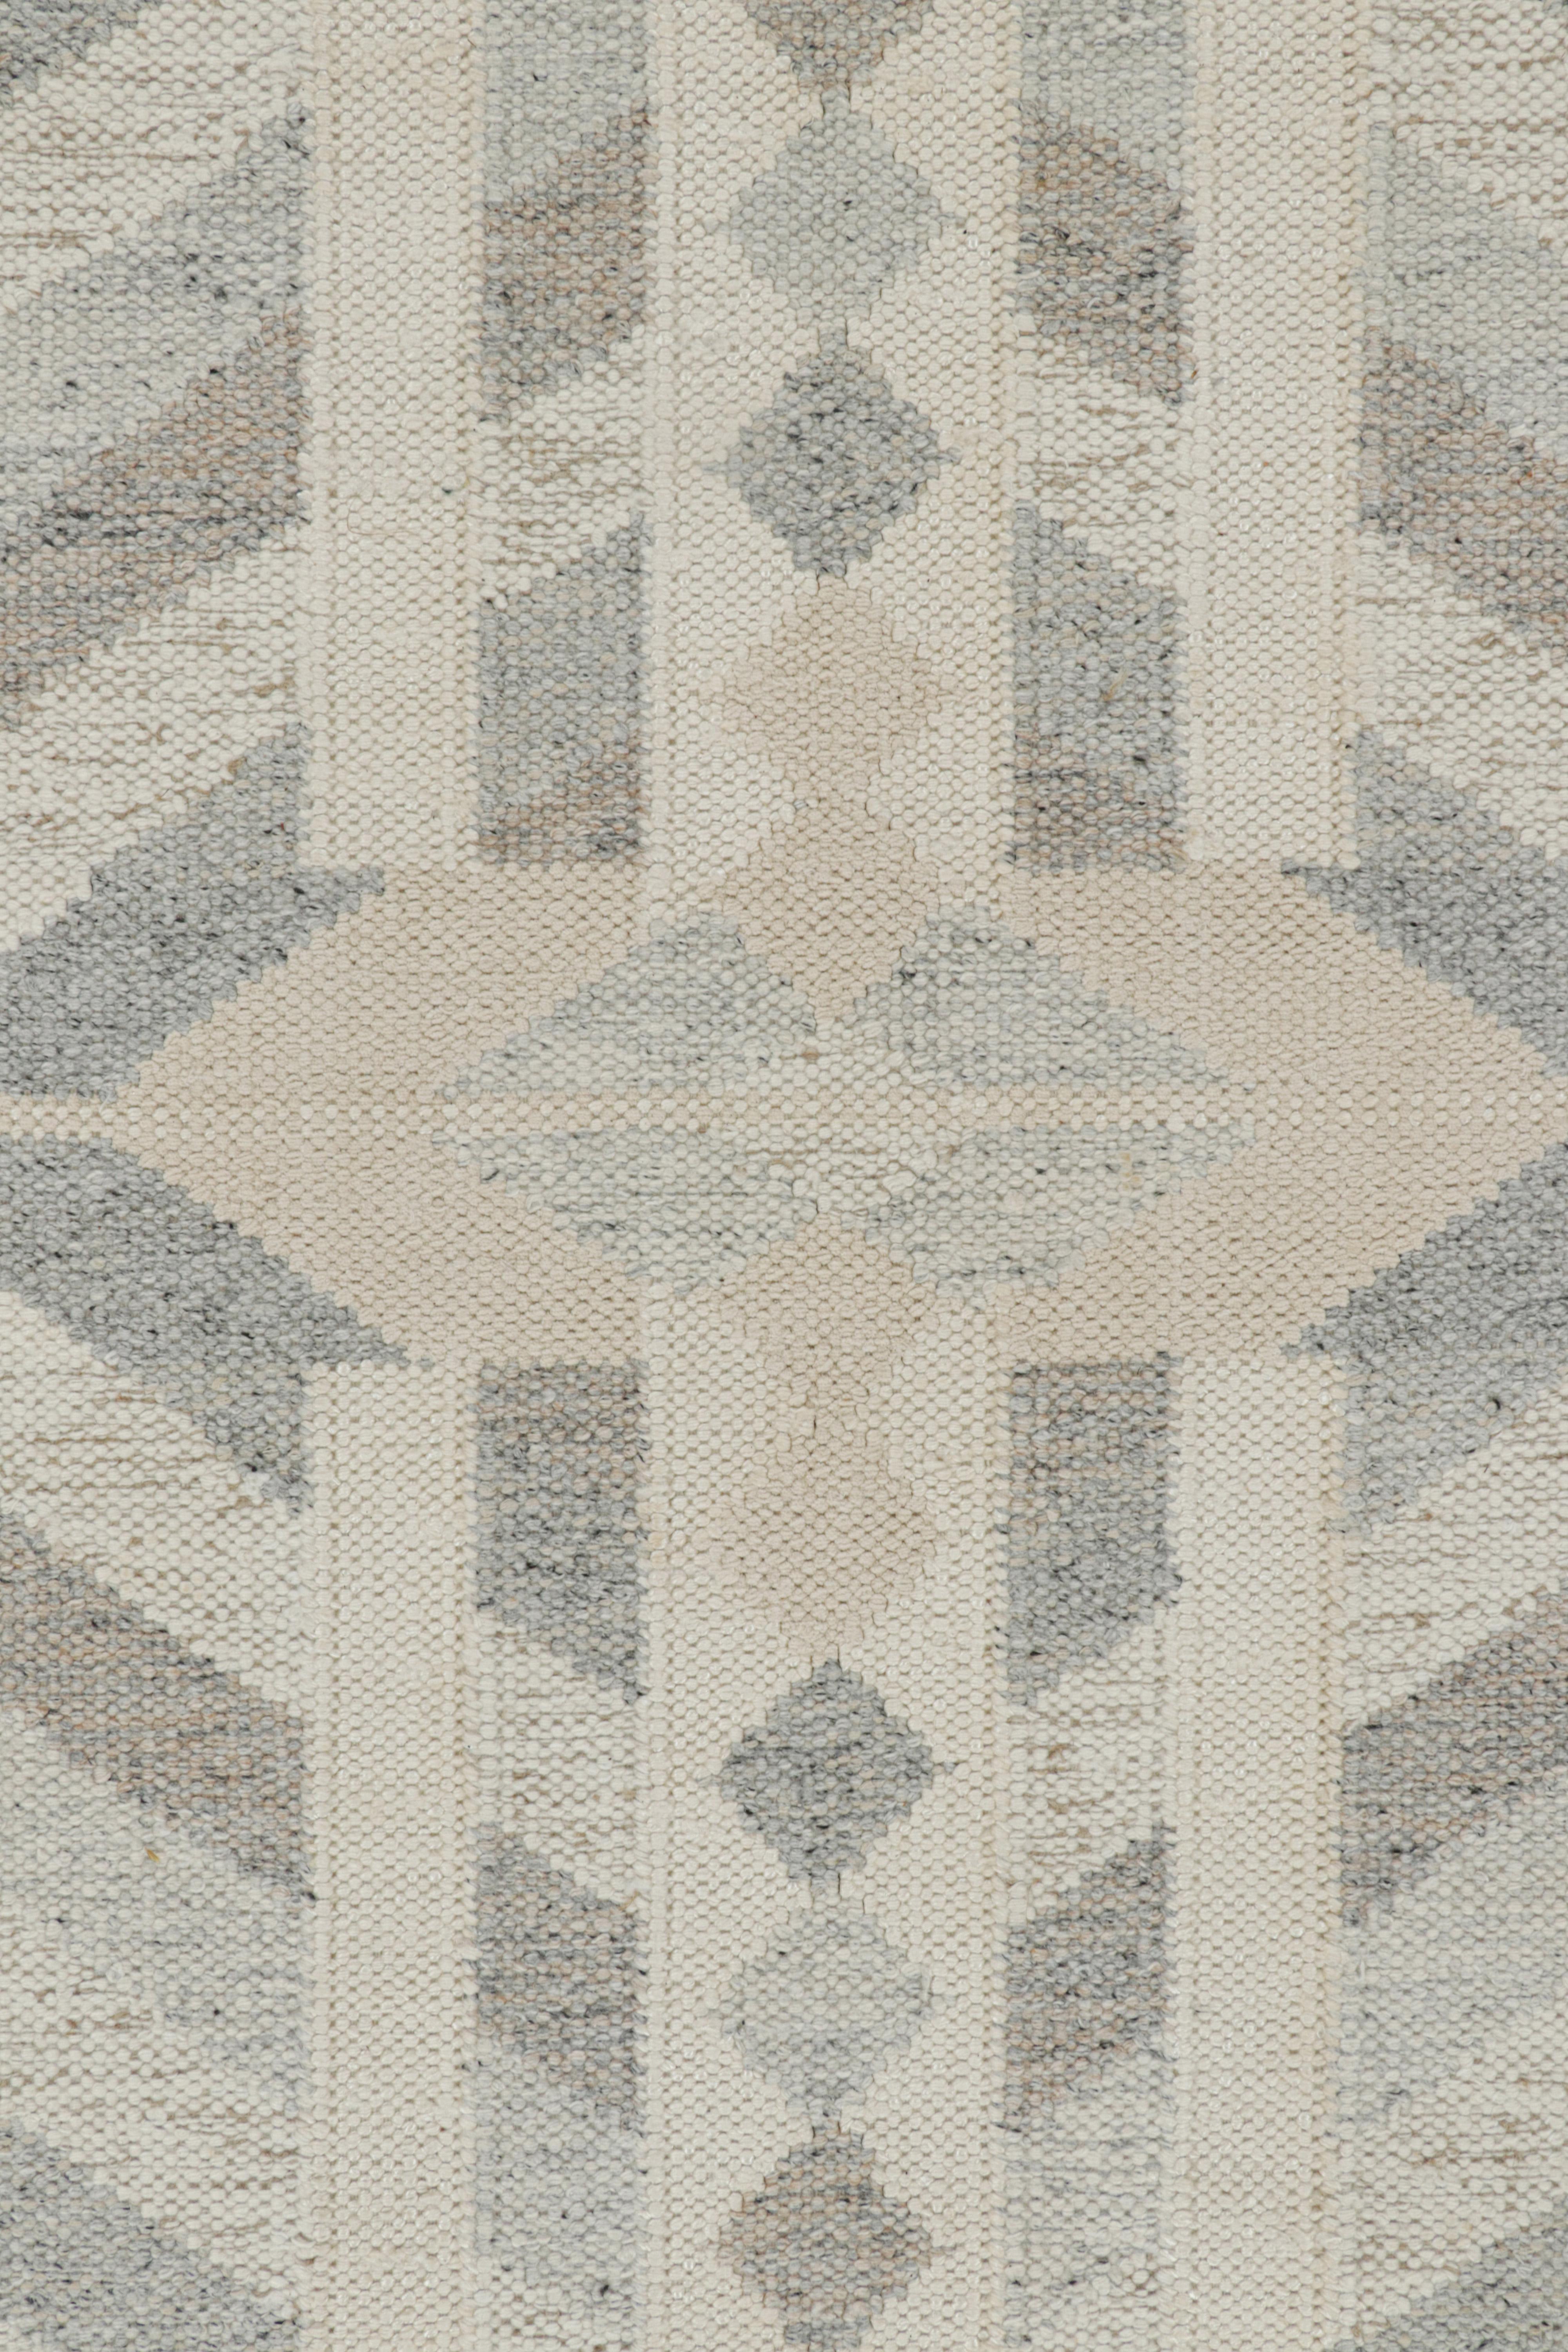 Moderne Rug & Kilim's Scandinavian Style Rug in Gray Beige and White Geometric Patterns (tapis de style scandinave à motifs géométriques gris, beige et blancs) en vente